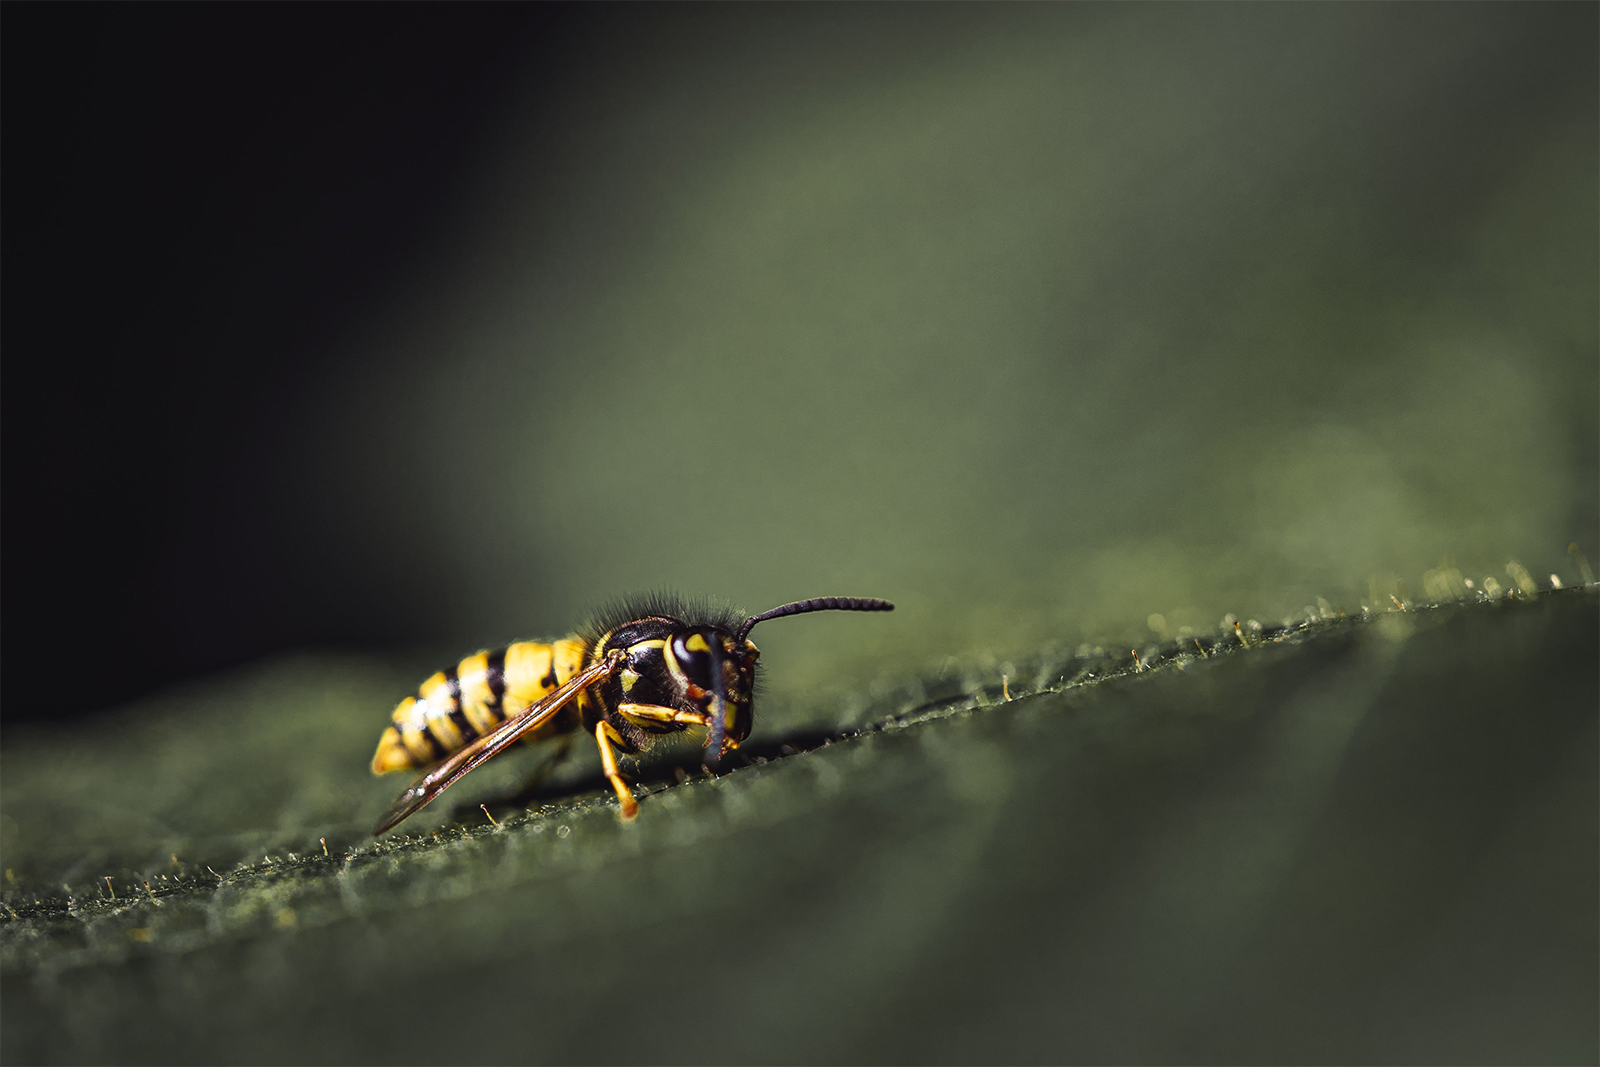 Can wasps see at night?